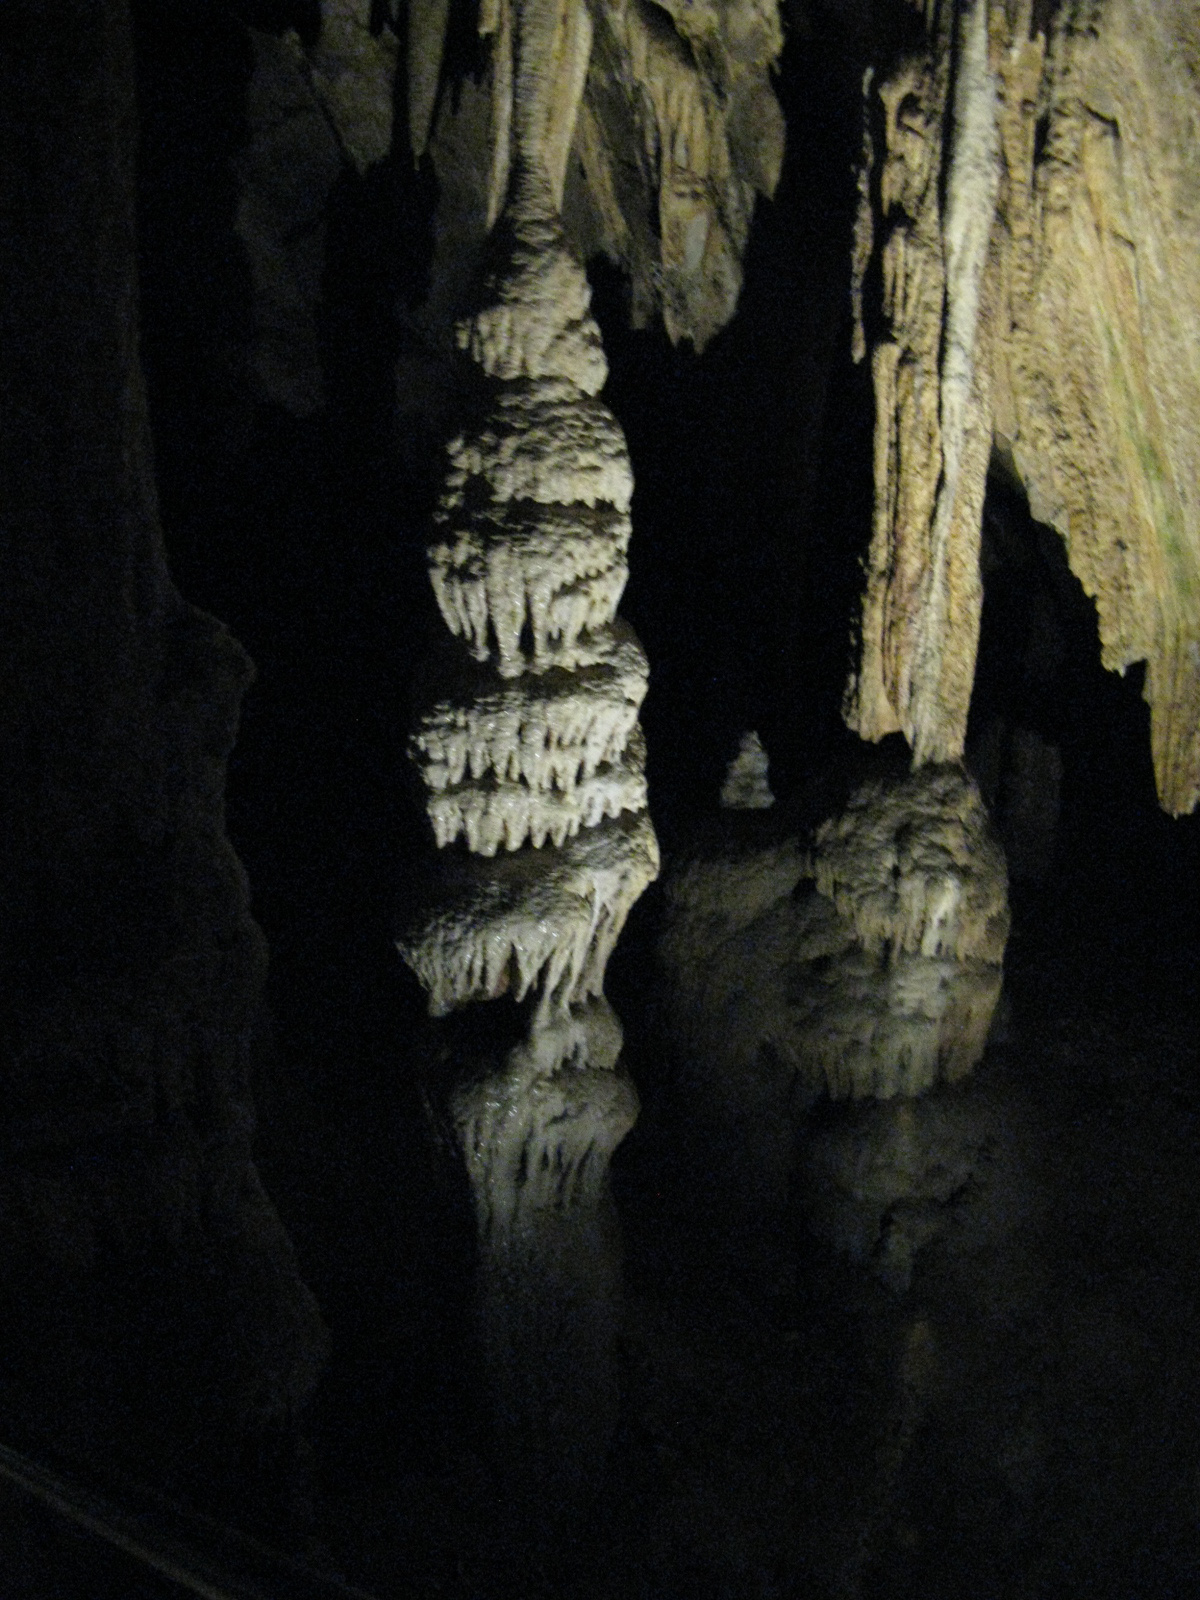 Szent István-barlang